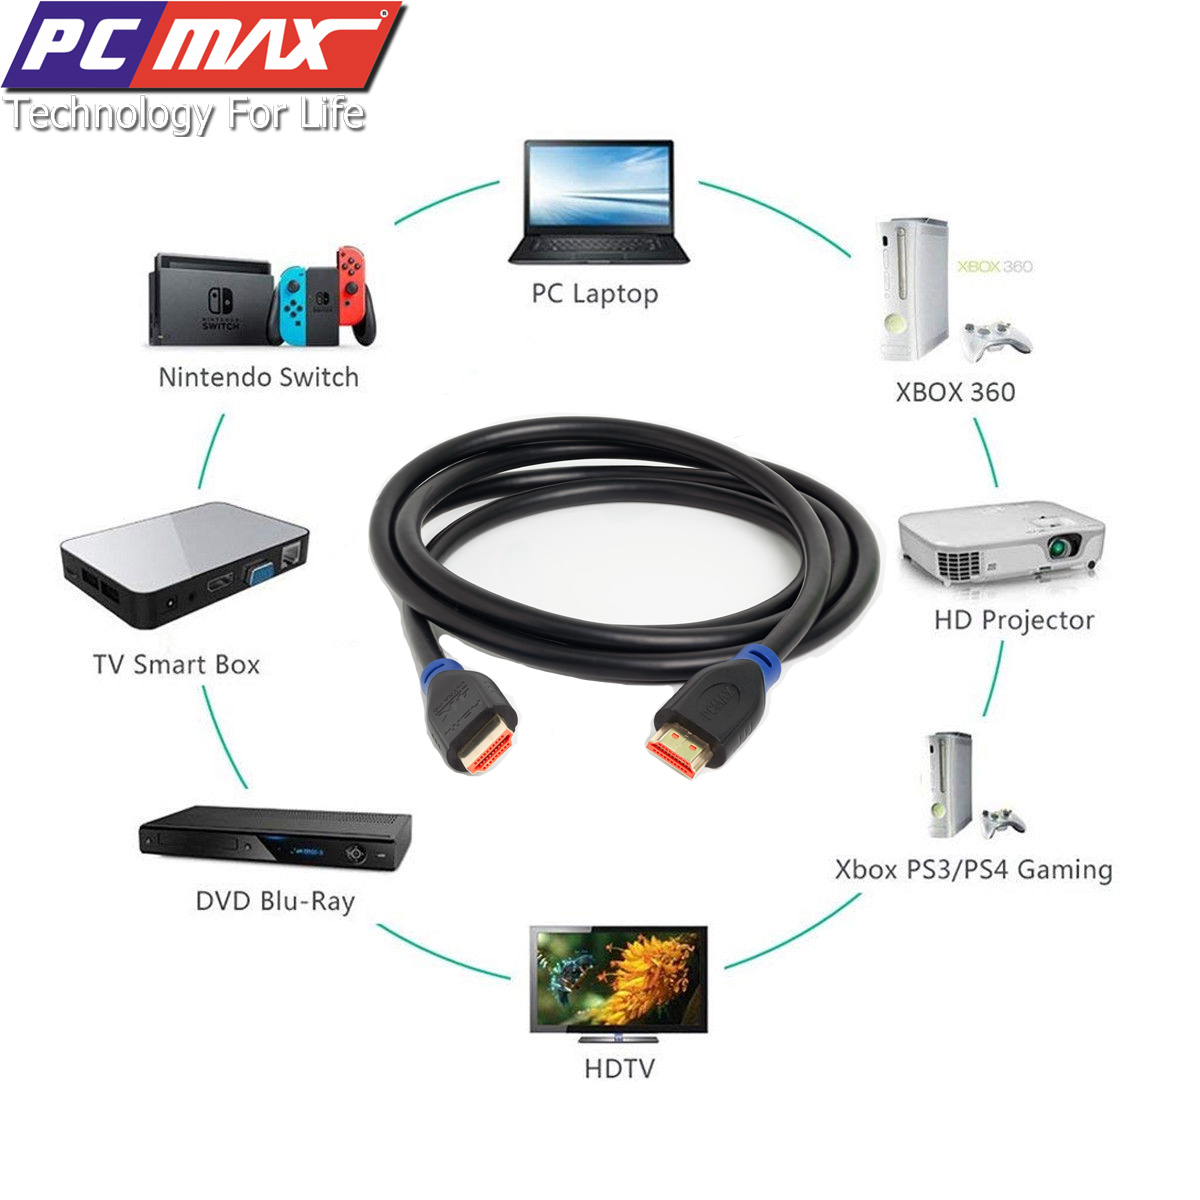 Cáp HDMI 2.0 hỗ trợ 4k chống nhiễu mạ vàng PCMAX dài 1,5m PCM-2001- Hàng Chính Hãng